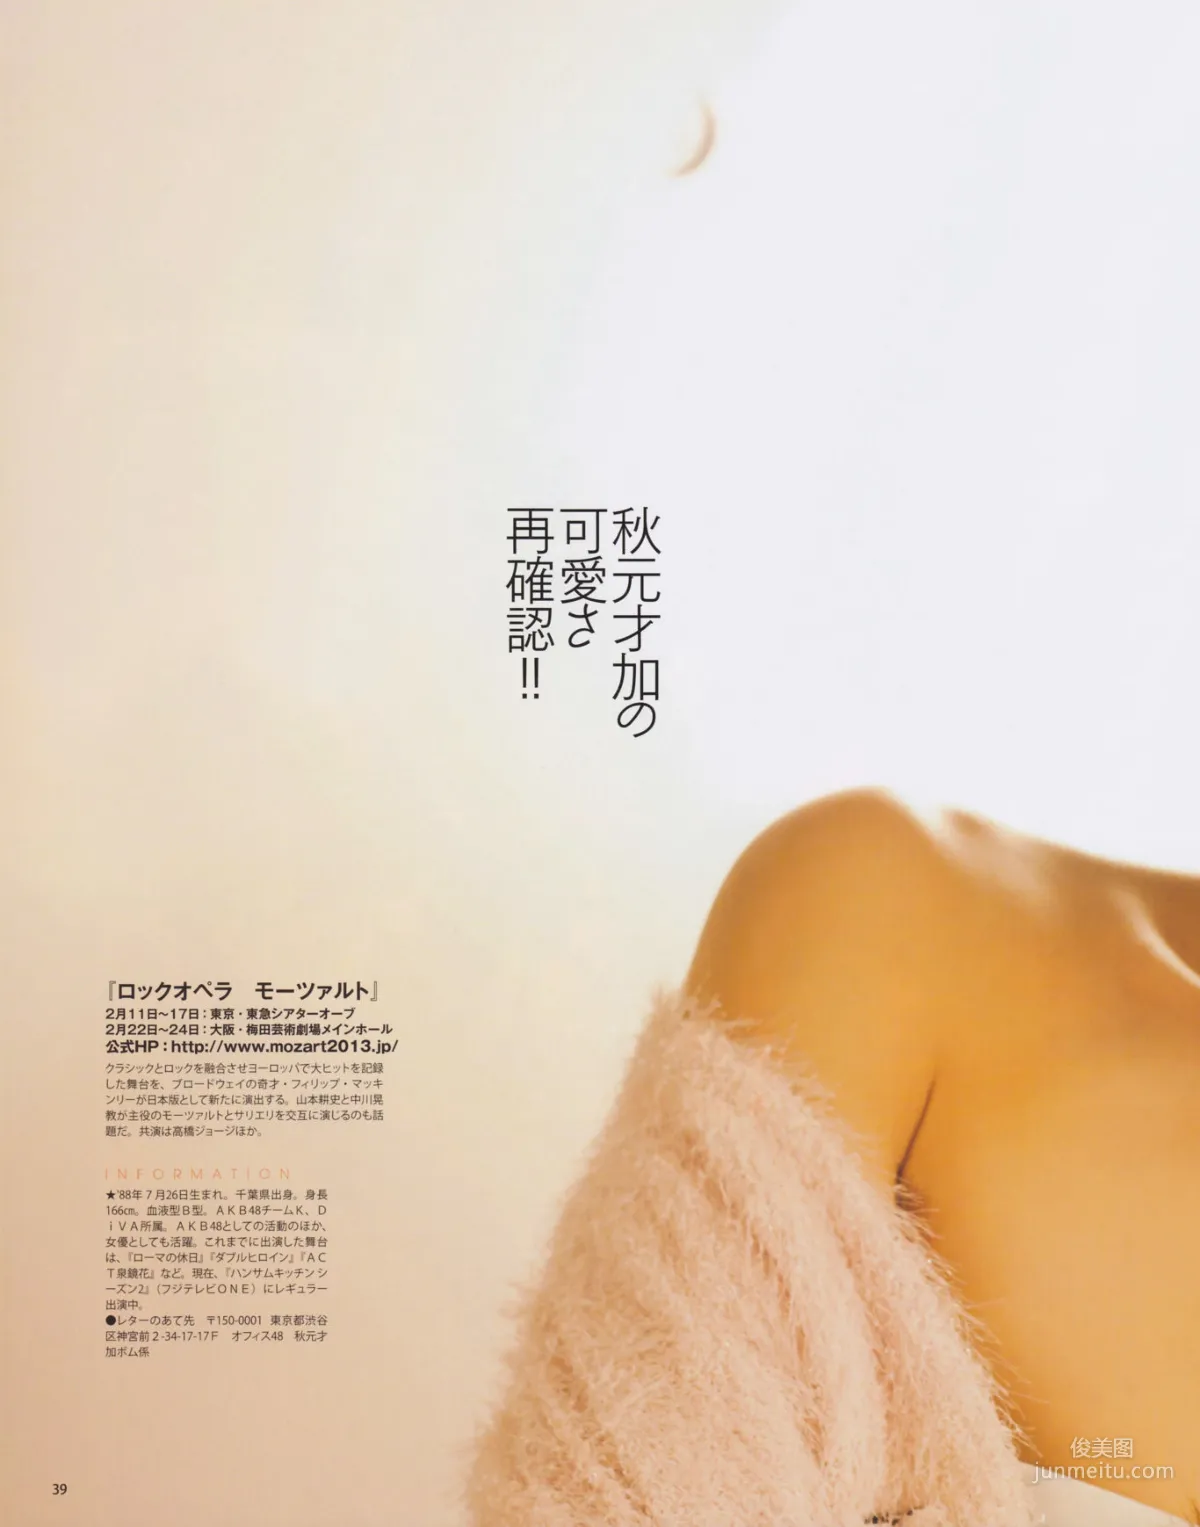 [Bomb Magazine] 2013年No.03 渡边麻友 秋元才加 AKB48 写真杂志27